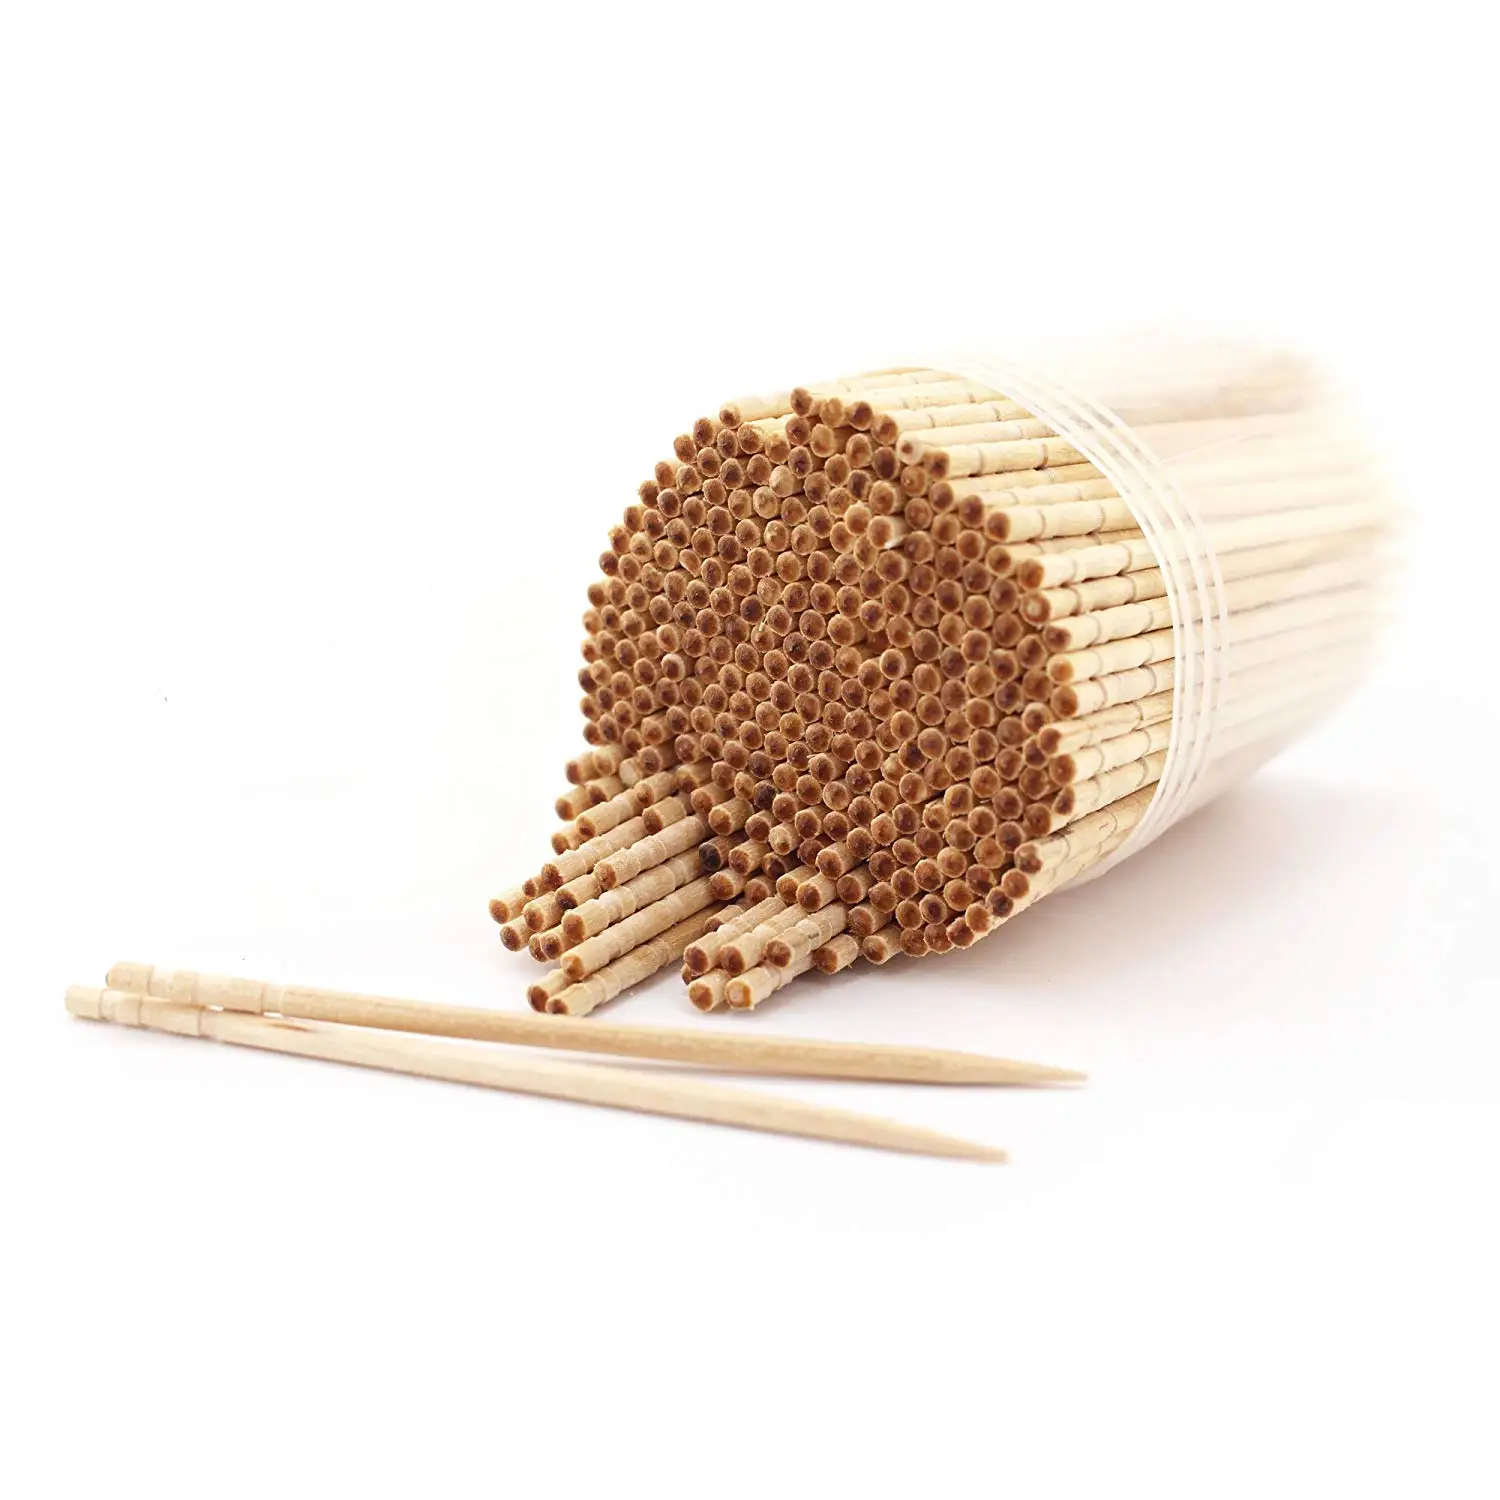 wood toothpicks